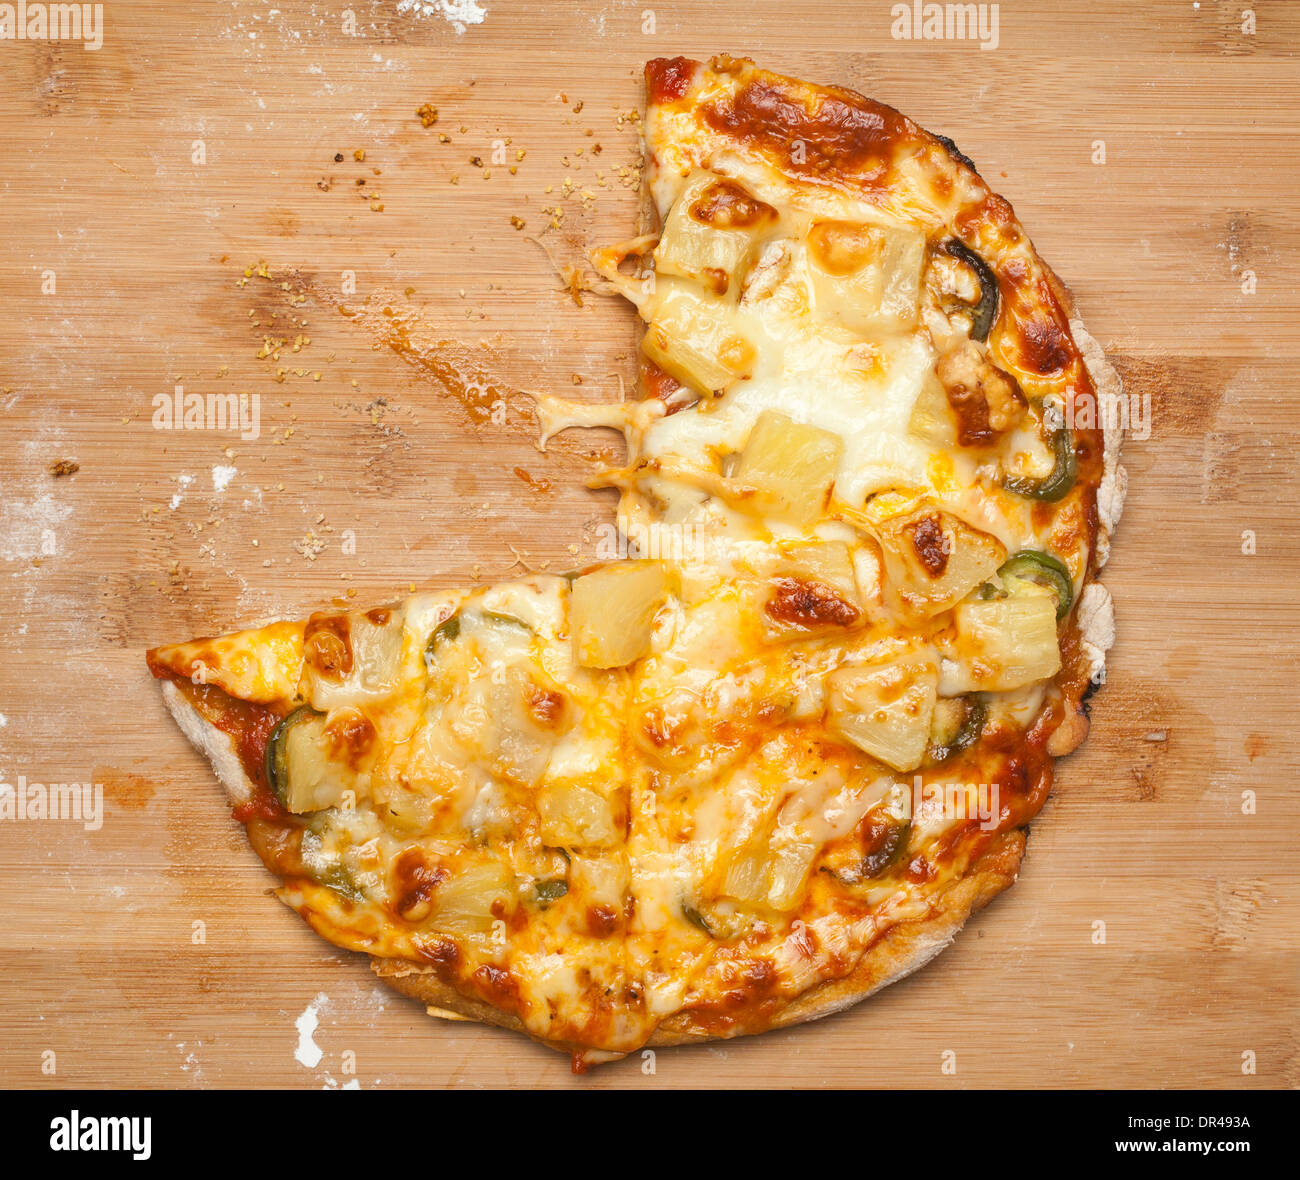 Pizza avec des tranches de fromage mangé Banque D'Images